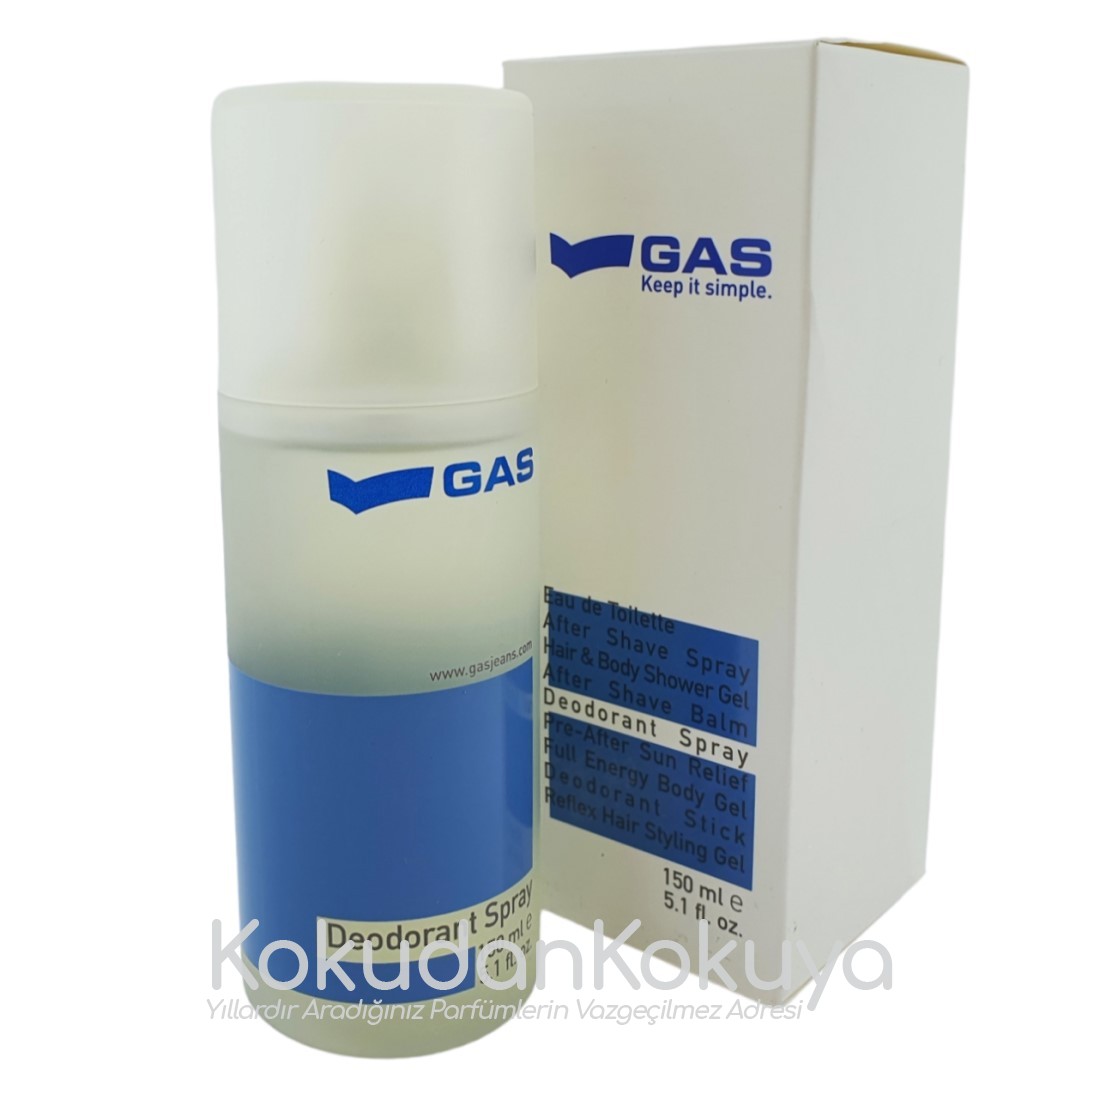 GAS Gas for Men (Vintage) Deodorant Erkek 150ml Deodorant Spray (Metal) 